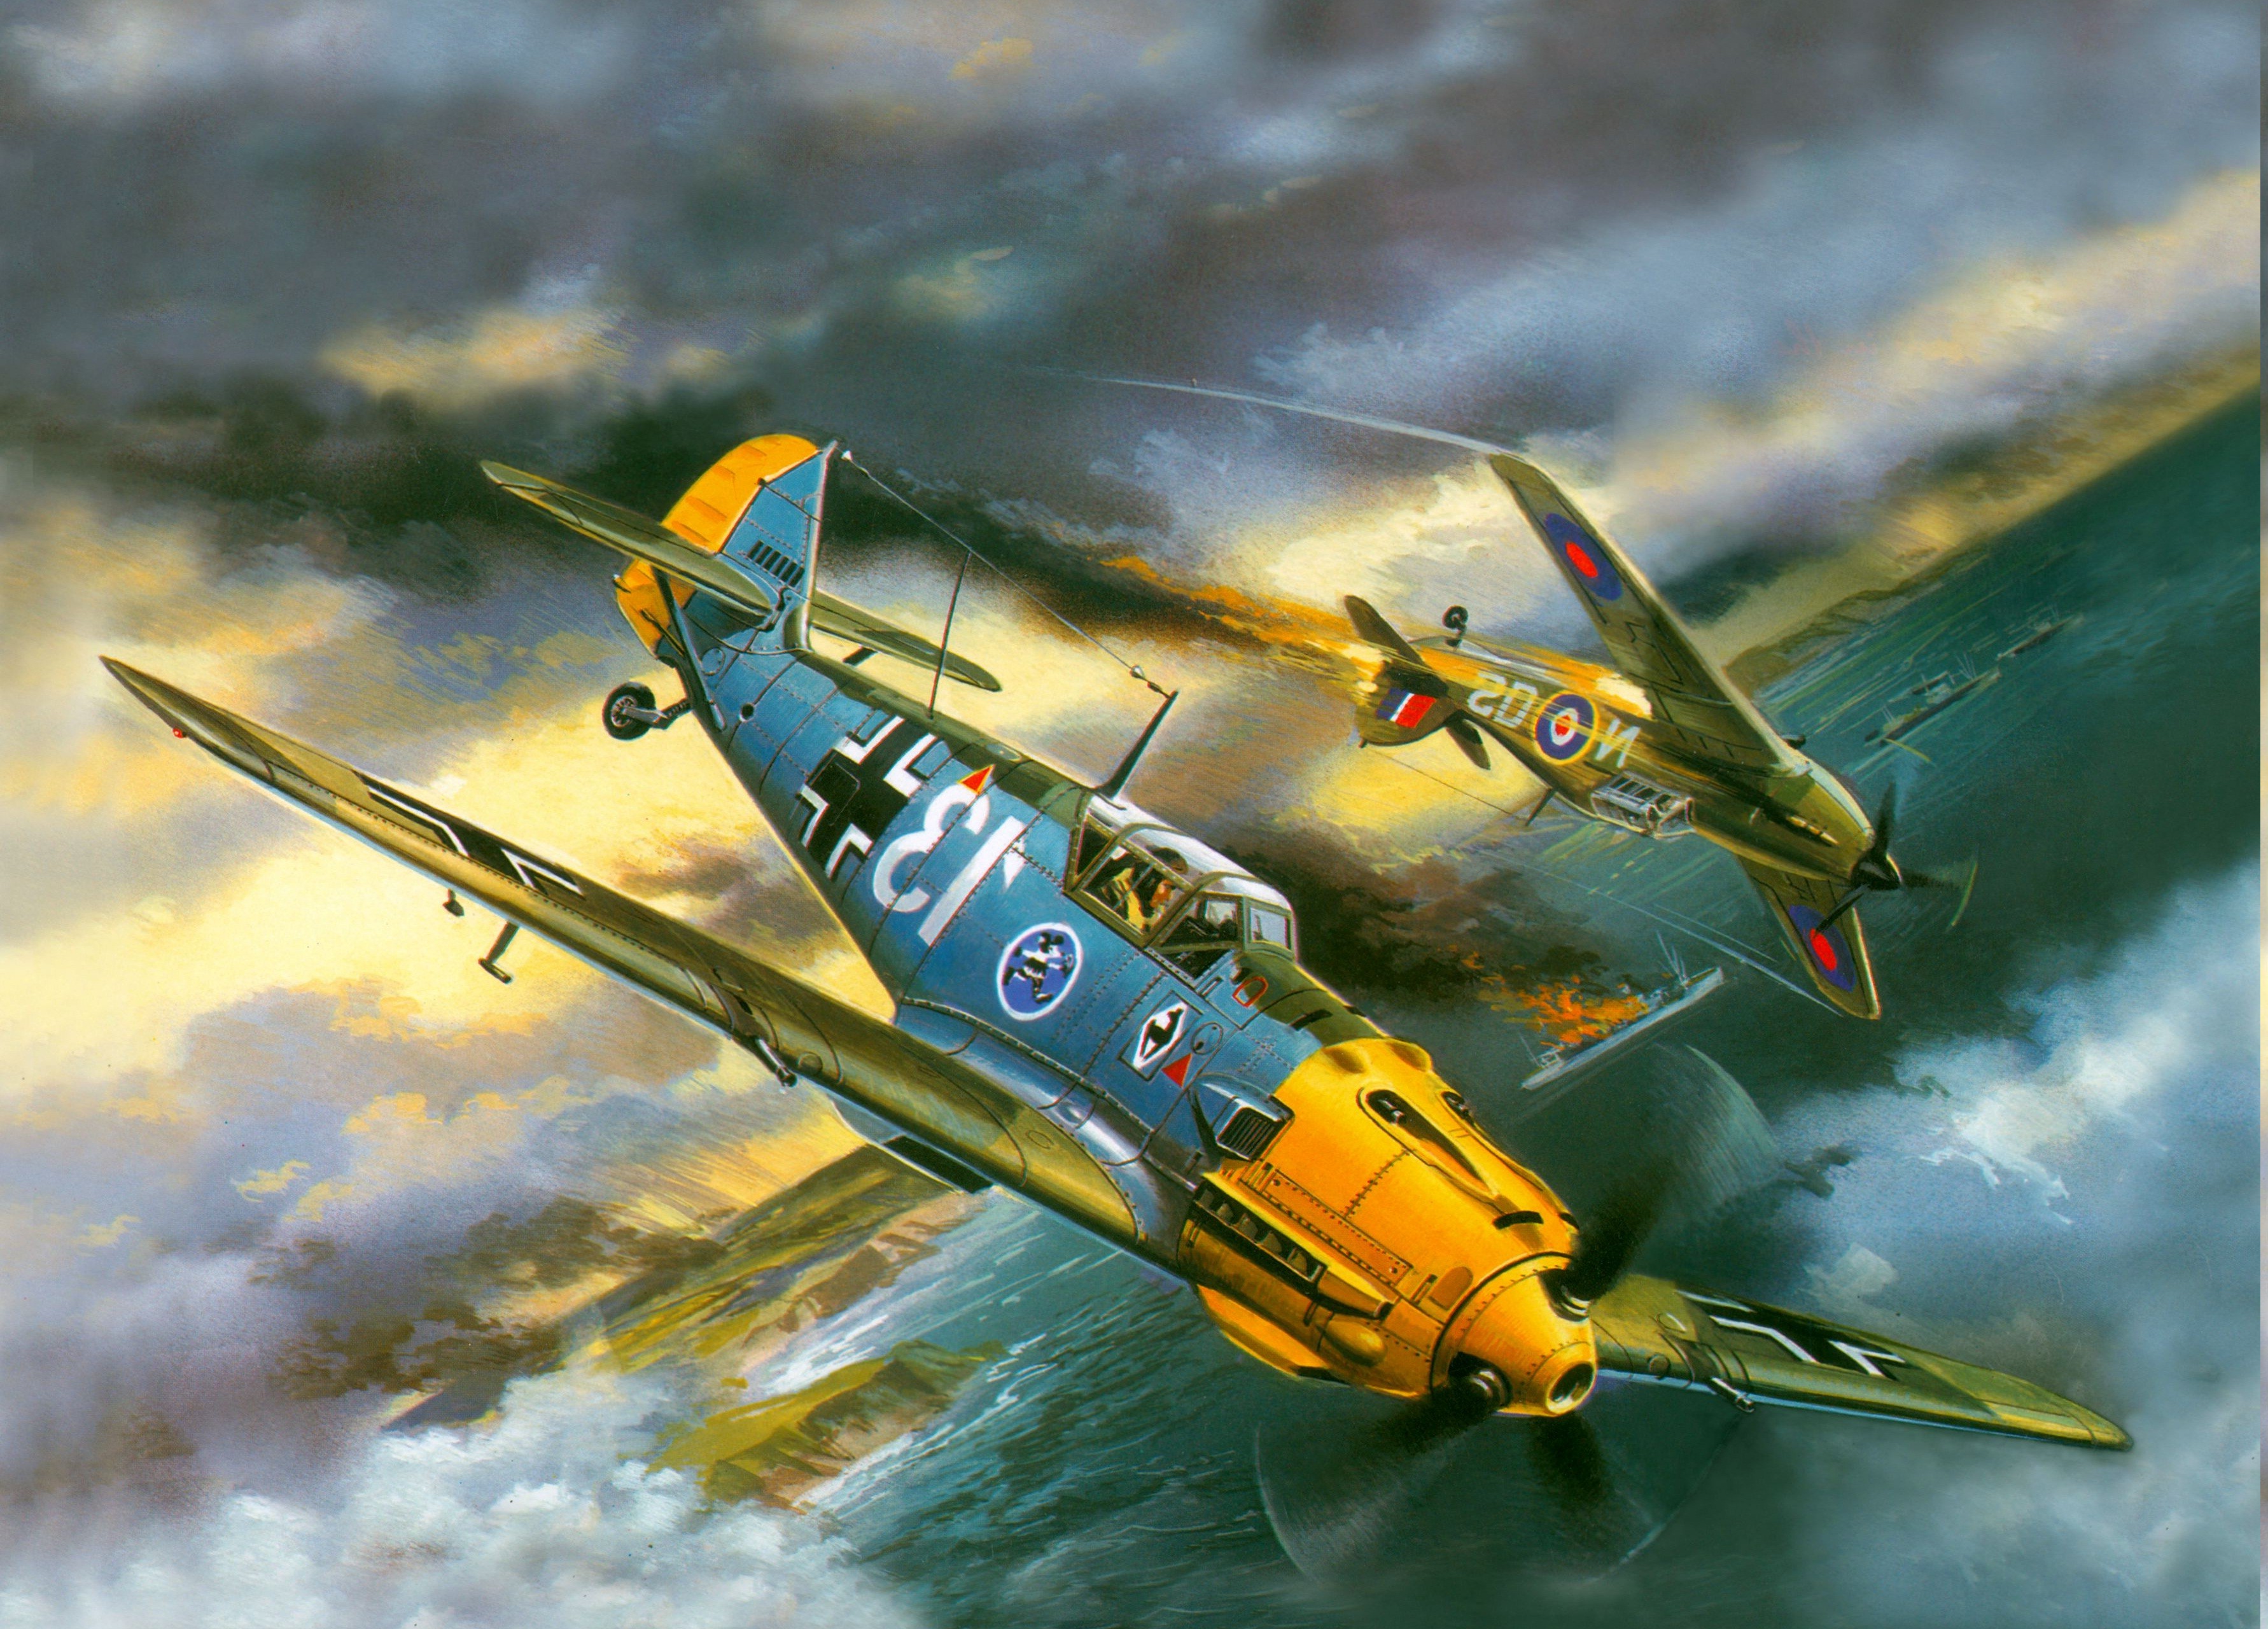 Messerschmitt, Messerschmitt Bf 109, World War II, Germany, Military Aircraft, Luftwaffe, Hawker Hurricane Wallpaper